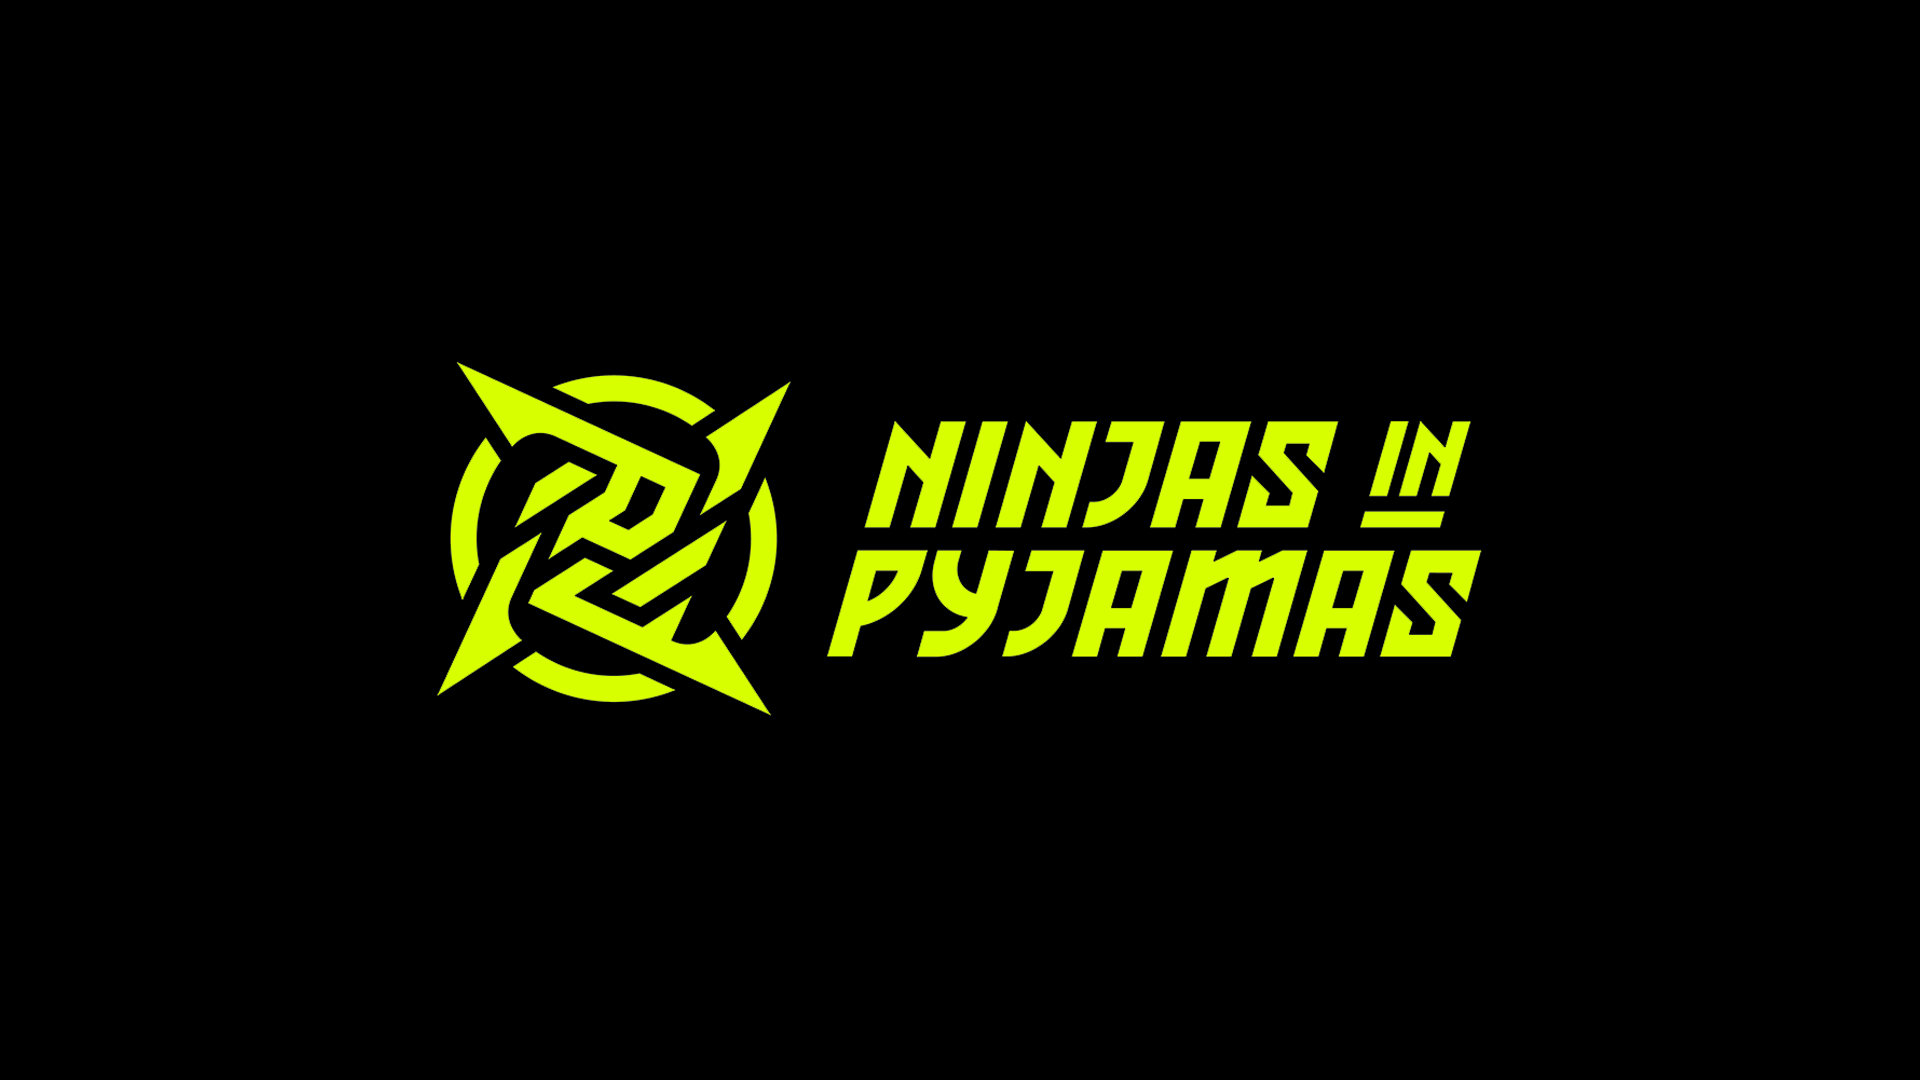 La nueva imagen de Ninjas in Pyjamas